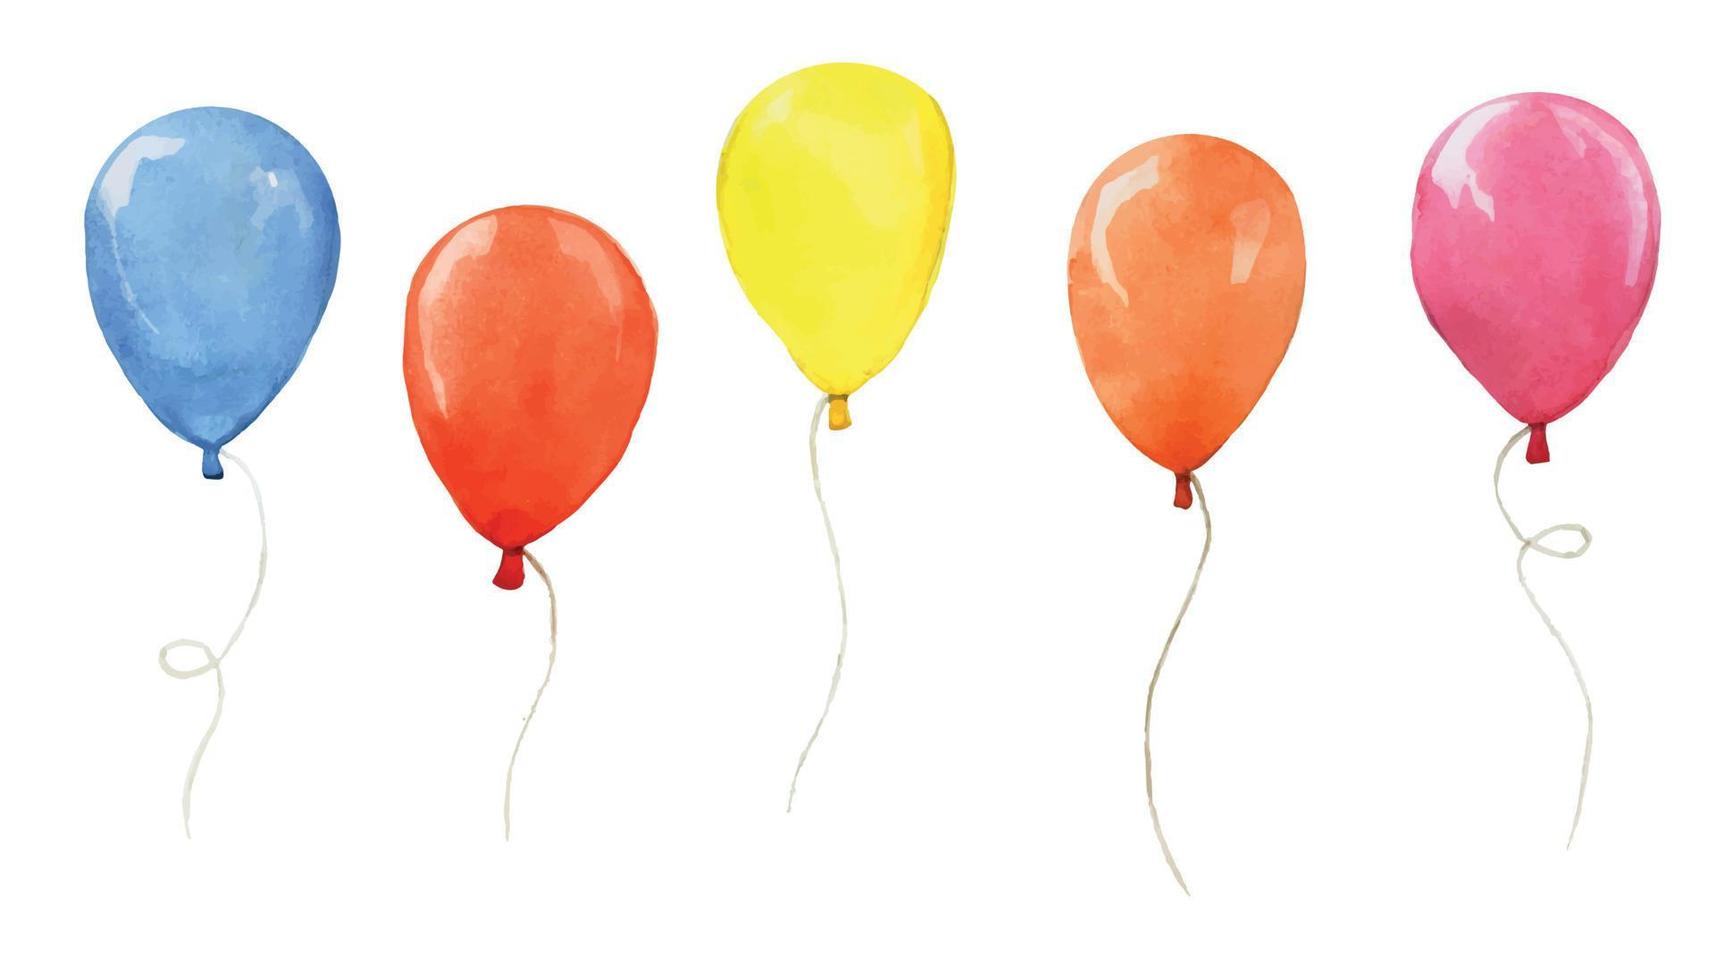 aquarela com balões coloridos isolados no fundo branco. coleção de balões festivos, decoração para o feriado, aniversário. balões azul, vermelho, laranja, rosa, amarelo vetor